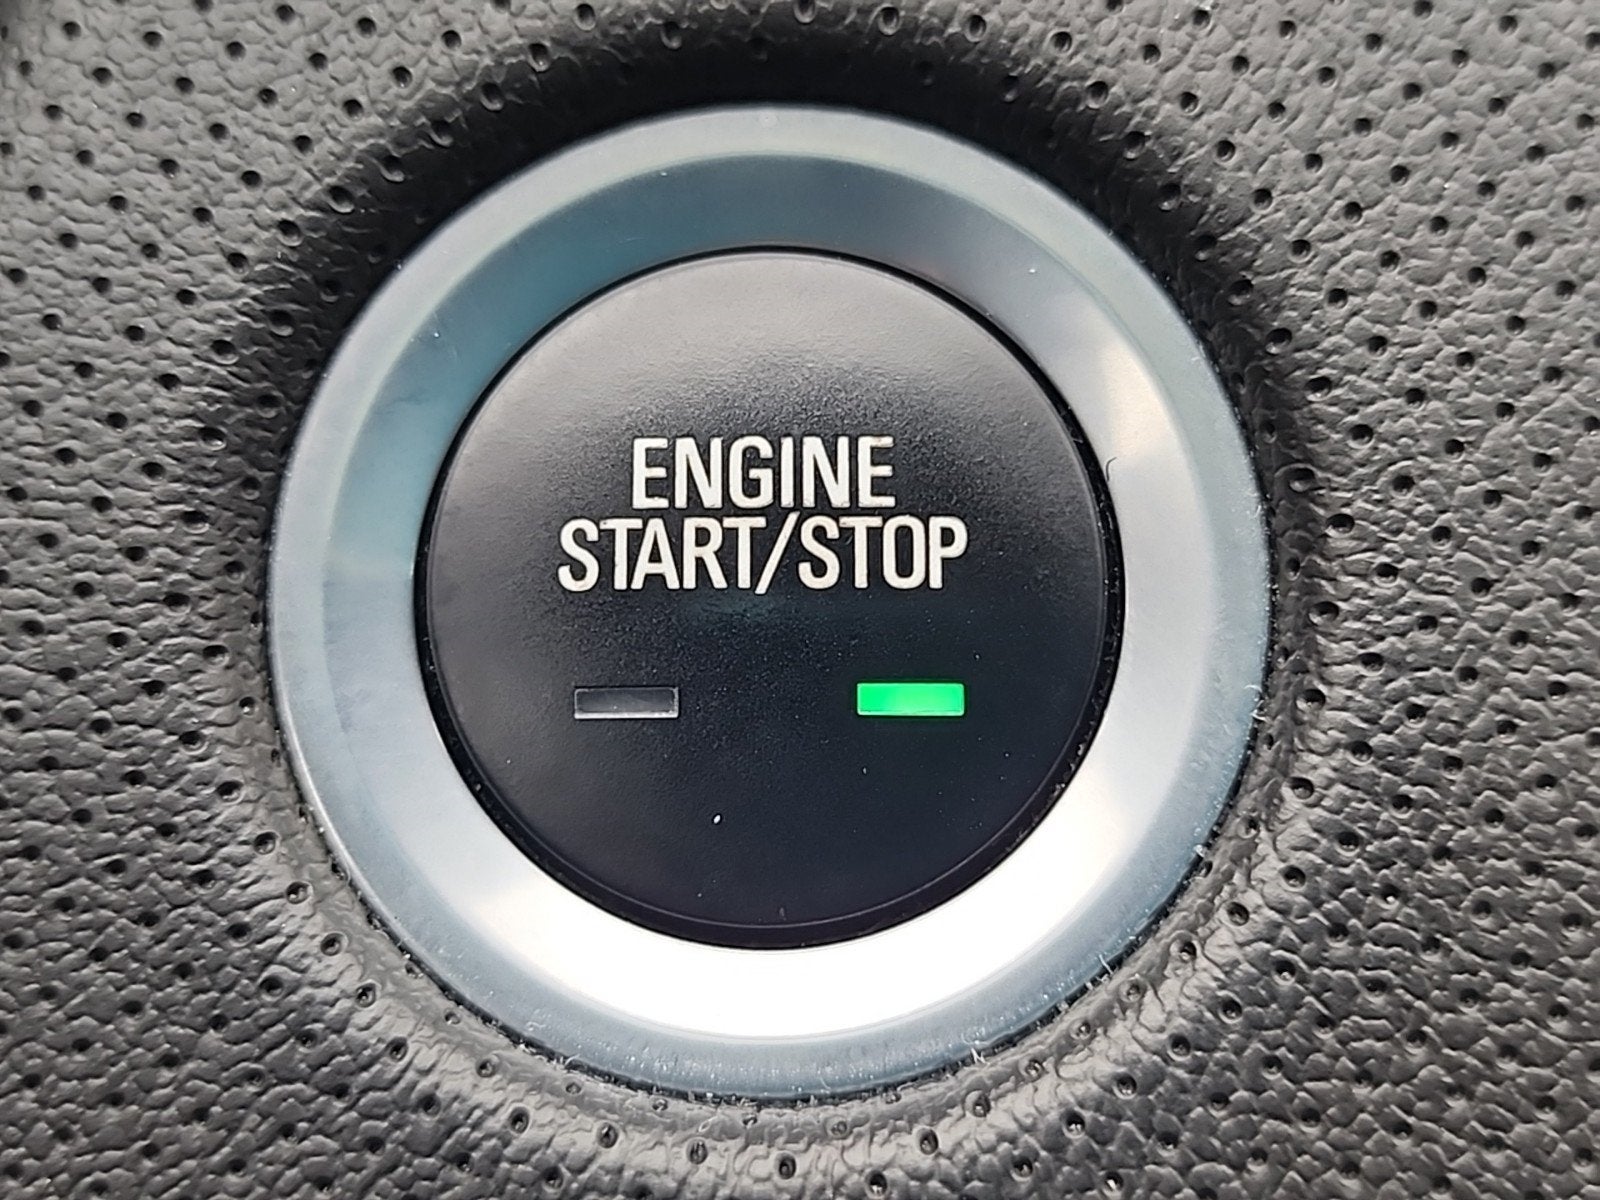 2017 Cadillac CT6 Hybrid Plug-In